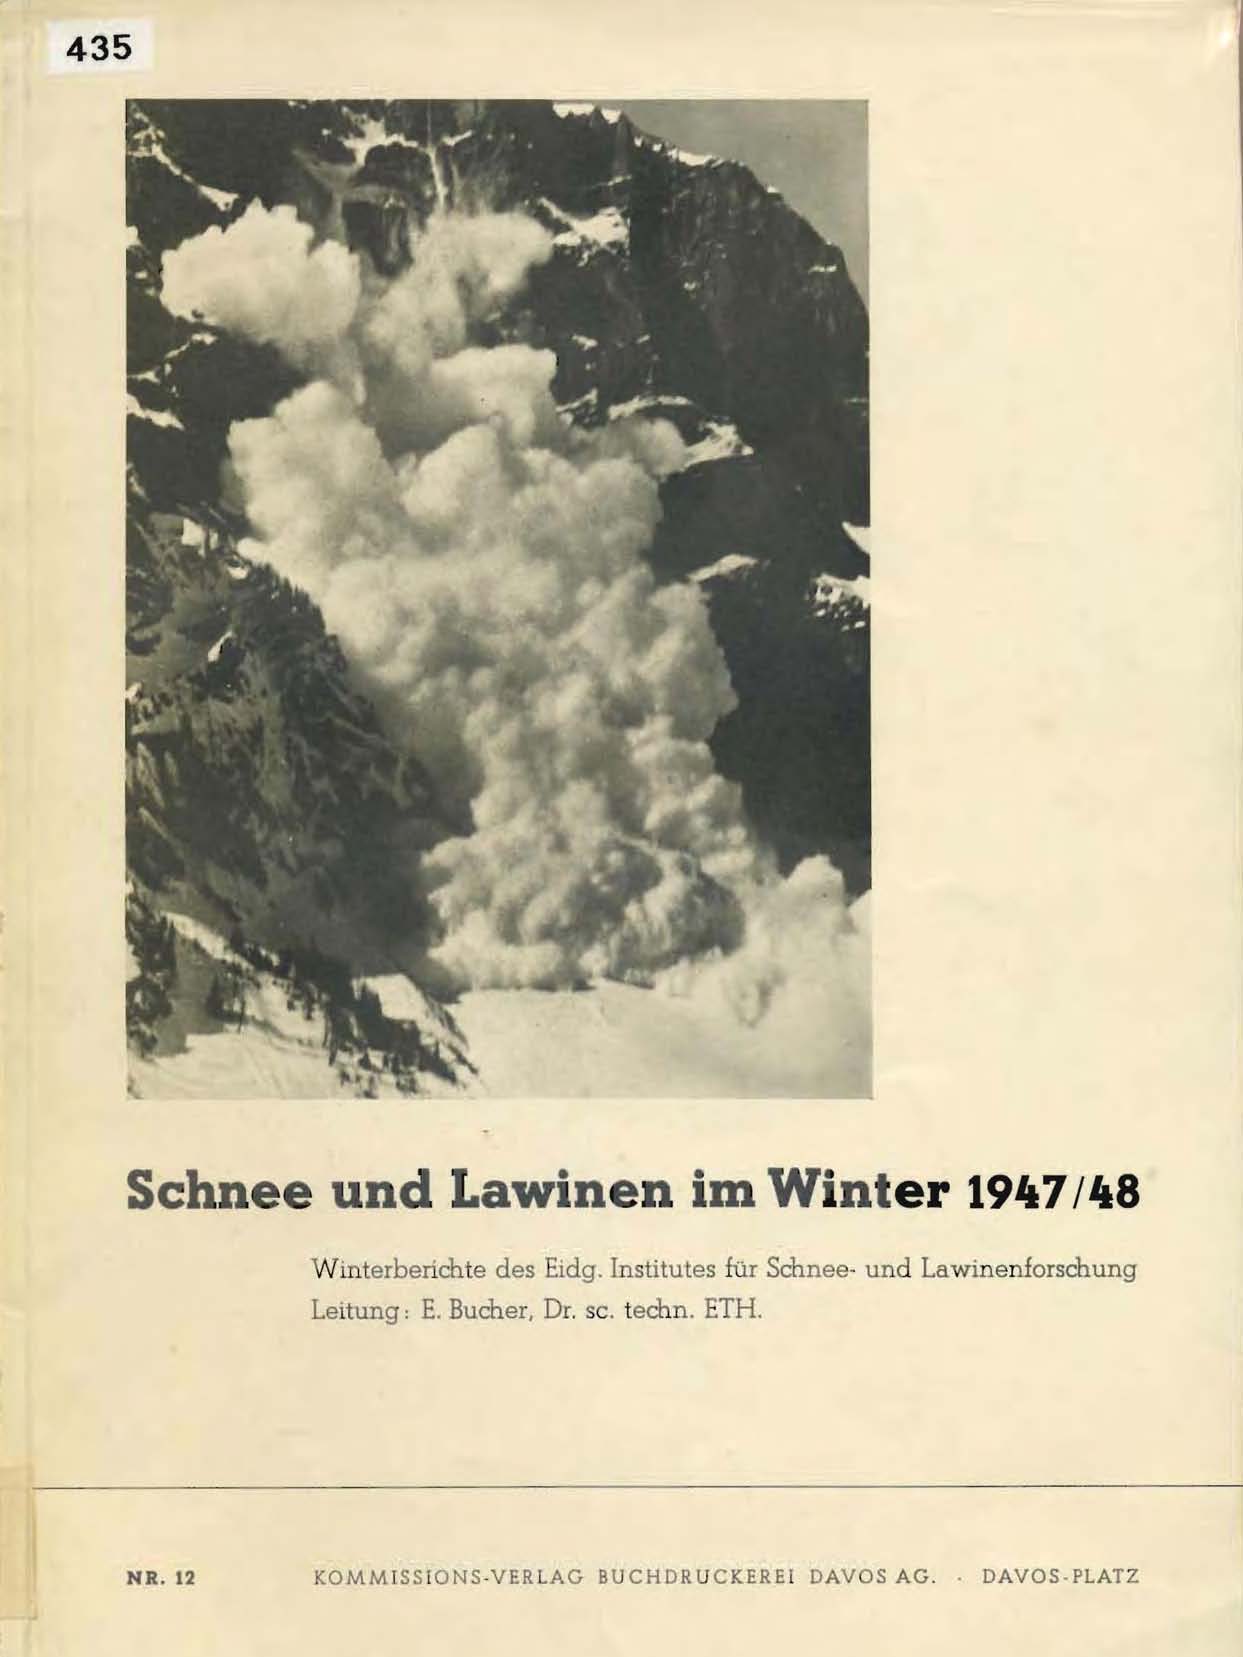 Schnee und Lawinen im Winter 1947/48